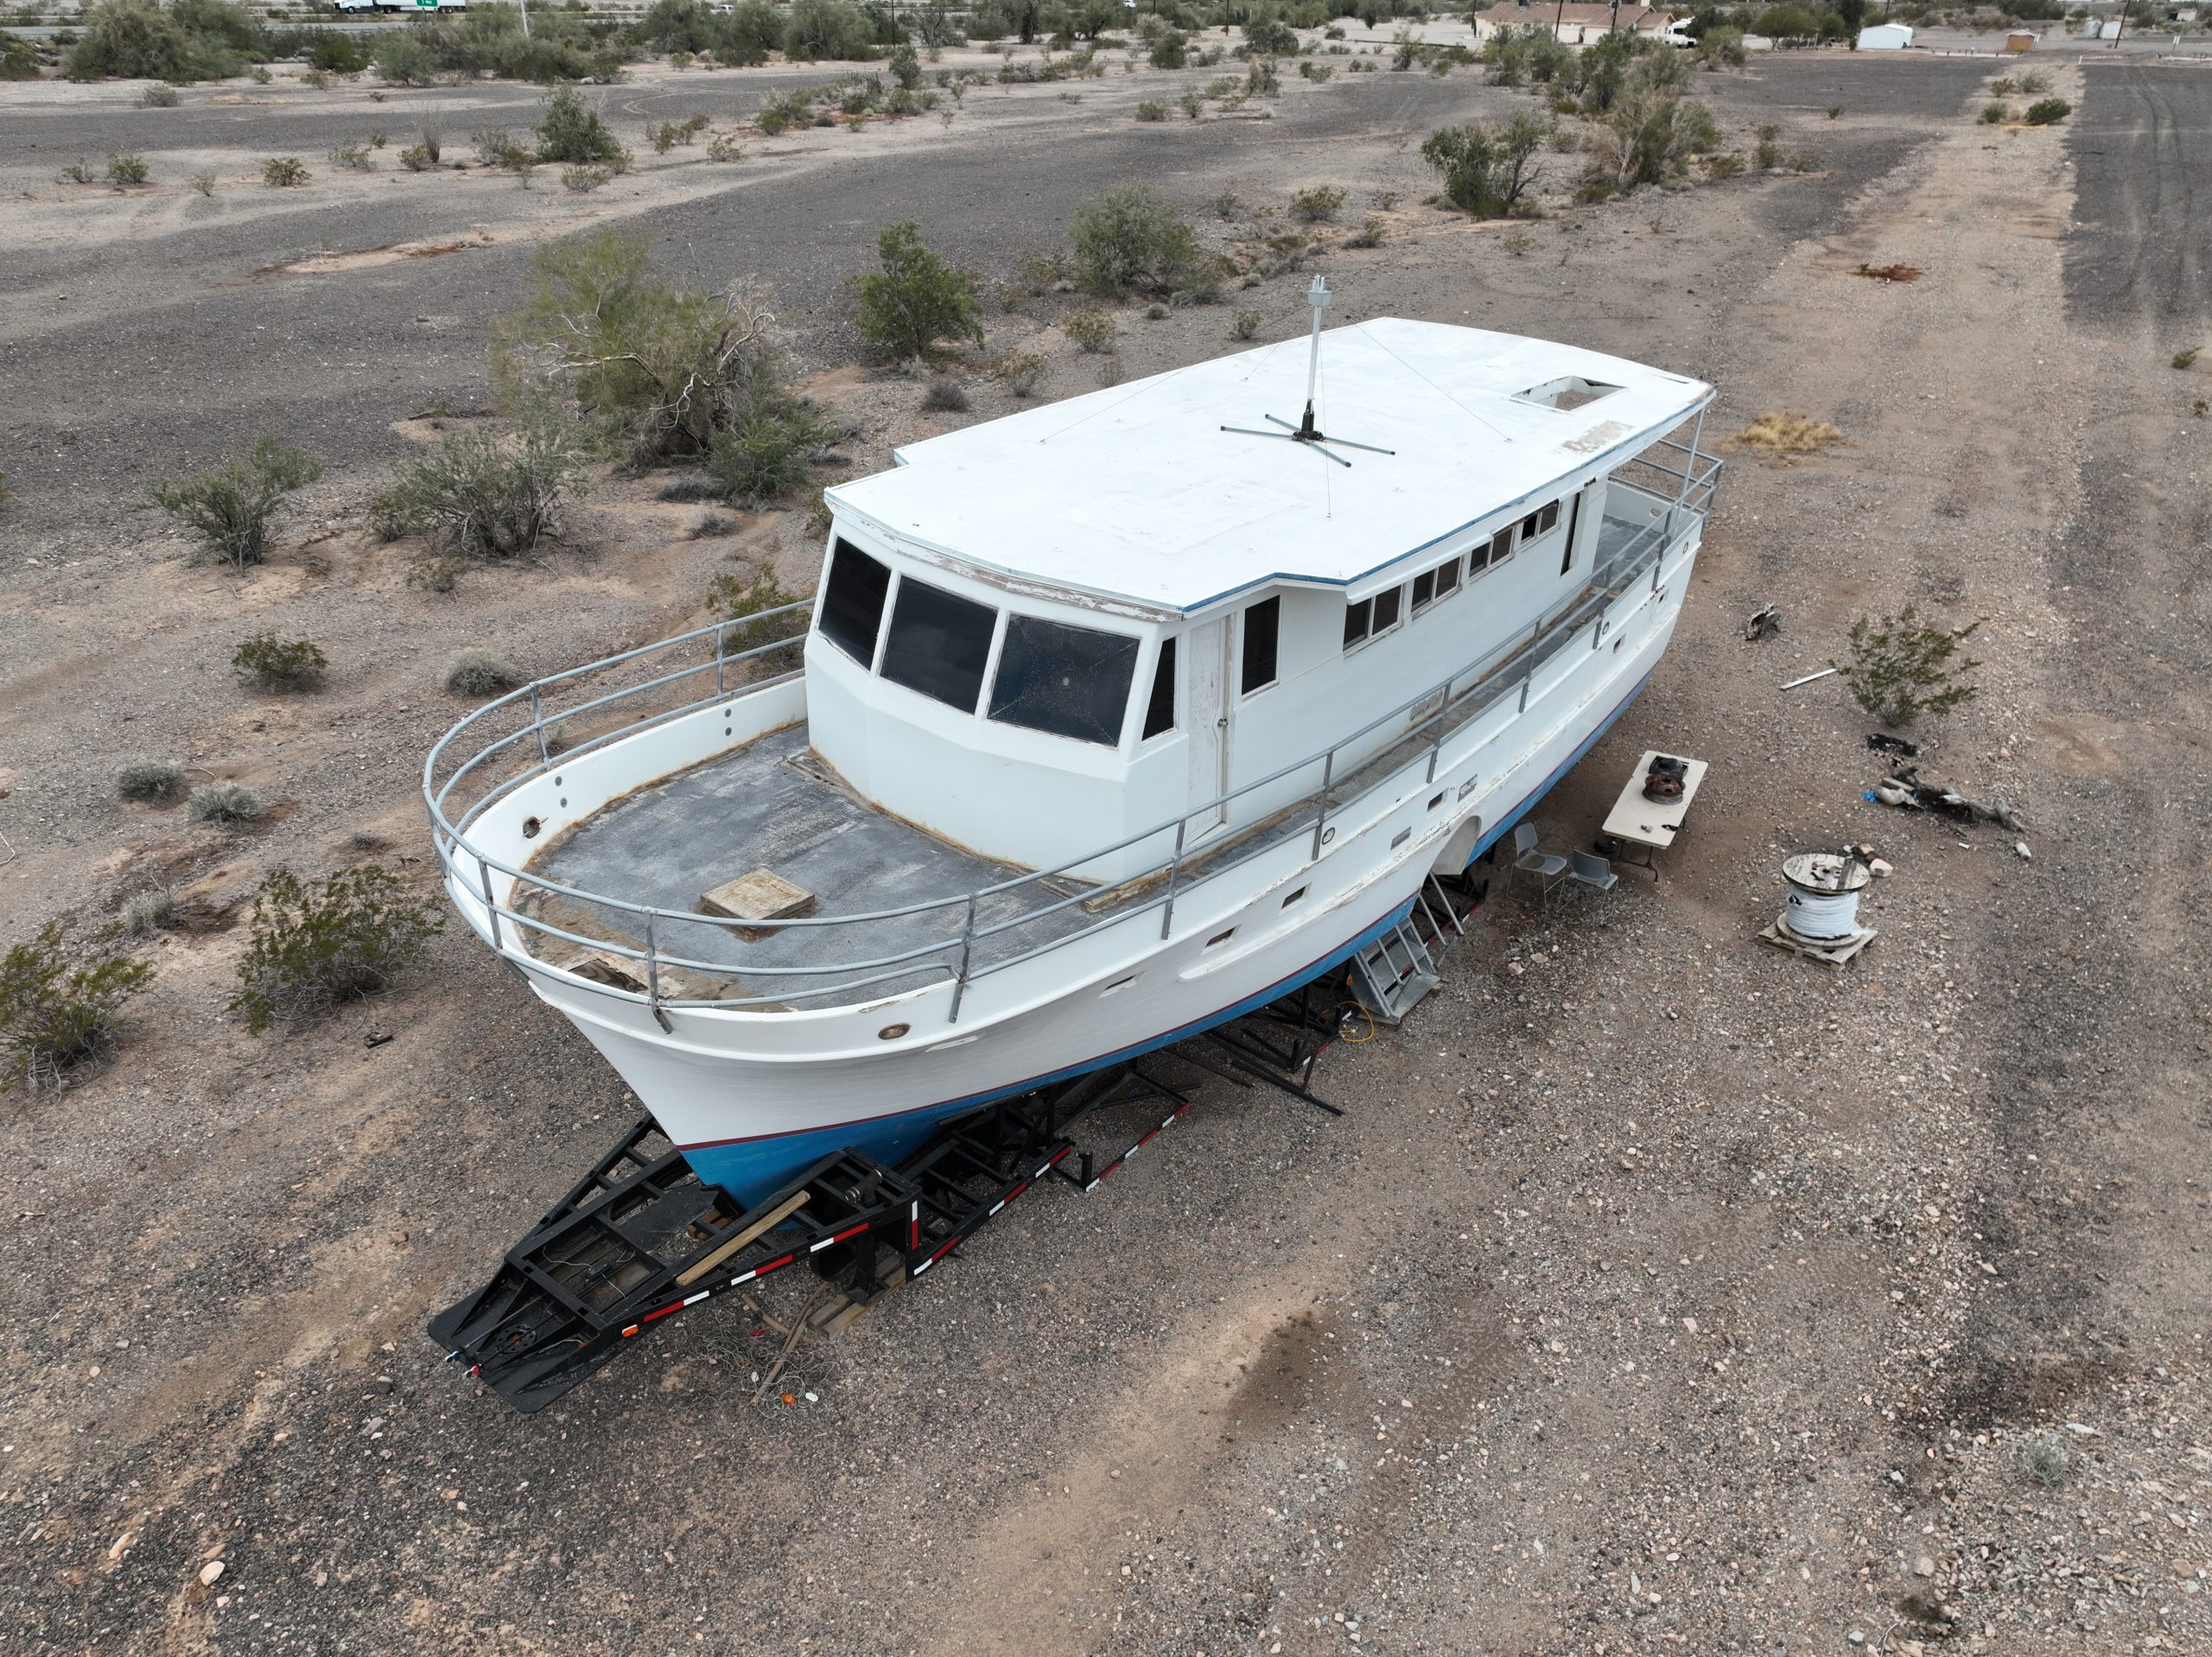 Abandoned Boat in the desert